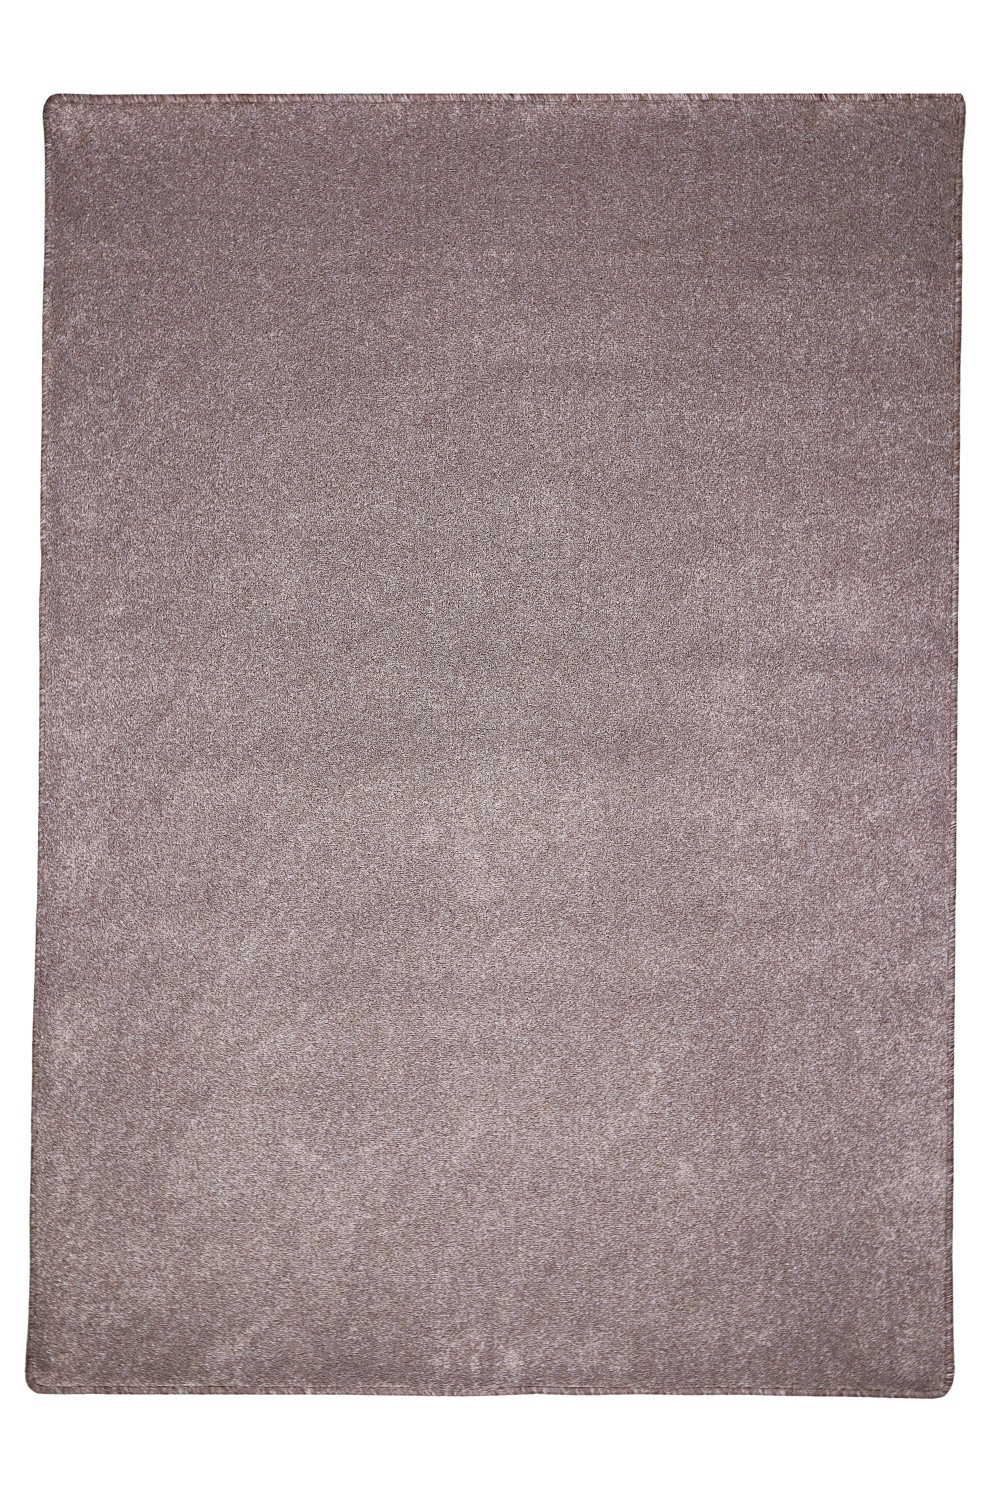 Levně Vopi koberce Kusový koberec Apollo Soft béžový - 100x100 cm